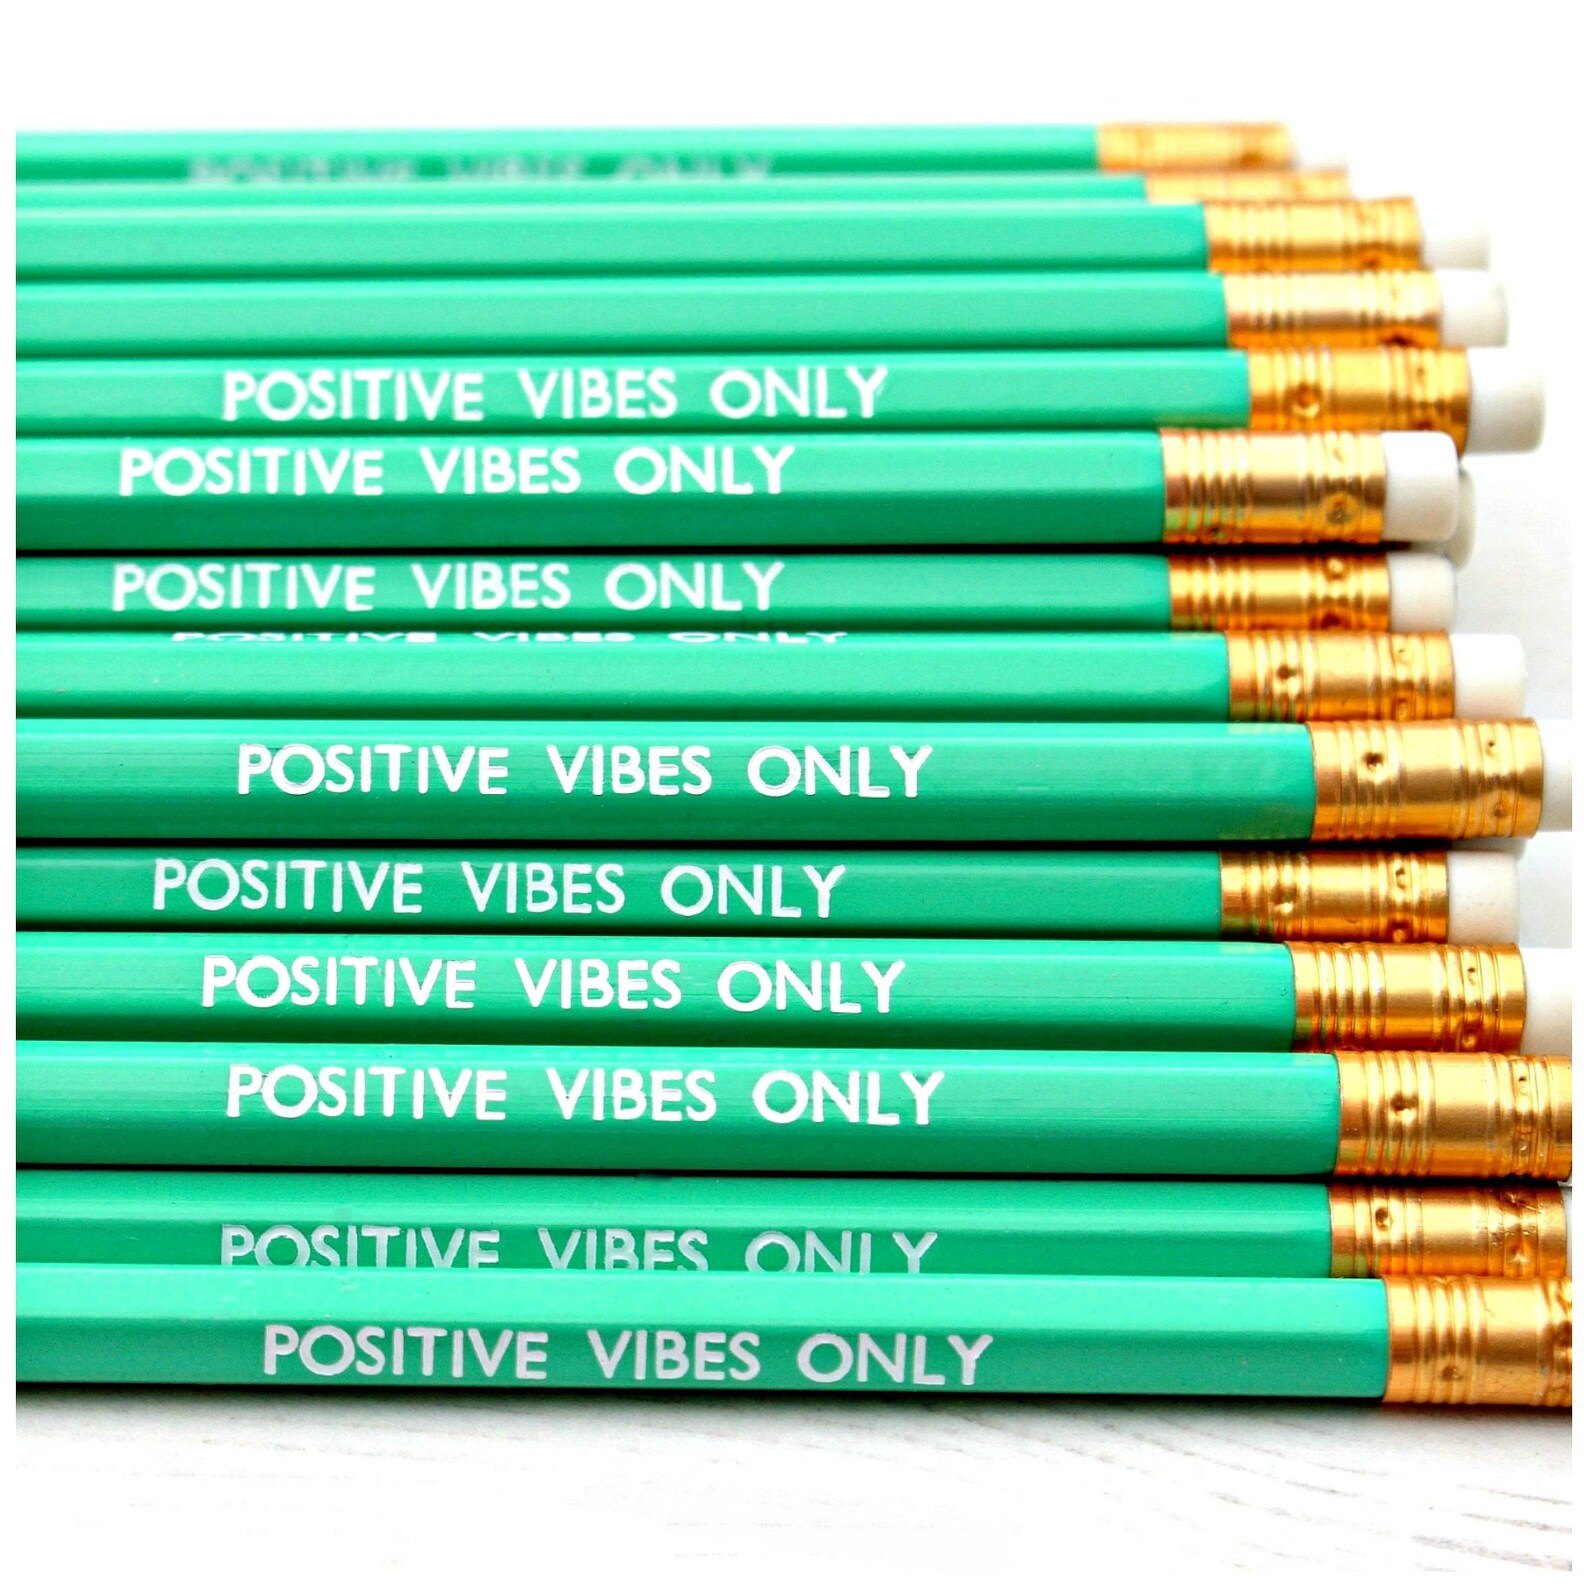 Only positive. Positive Vibes only. Positive Vibes.